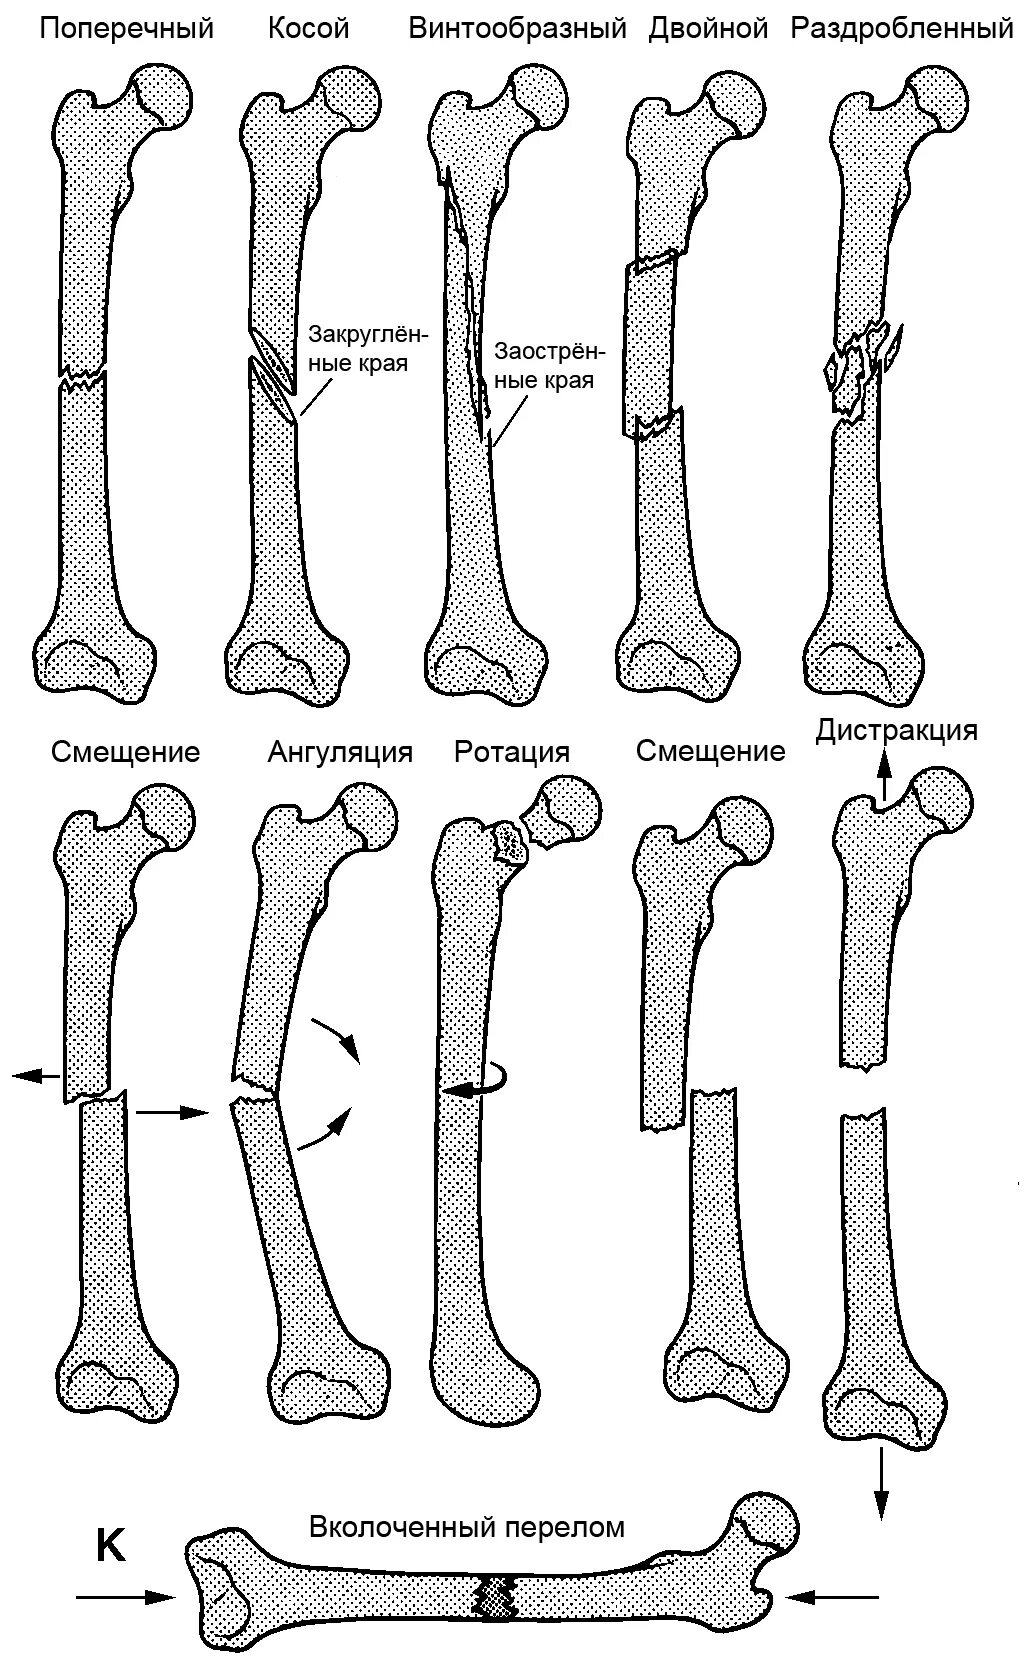 5 групп костей. Классификация переломов диафизарной части плечевой кости. Винтообразный оскольчатый перелом бедра. Смещение отломков при переломе бедренной кости. Классификация диафизарных переломов бедренной кости.